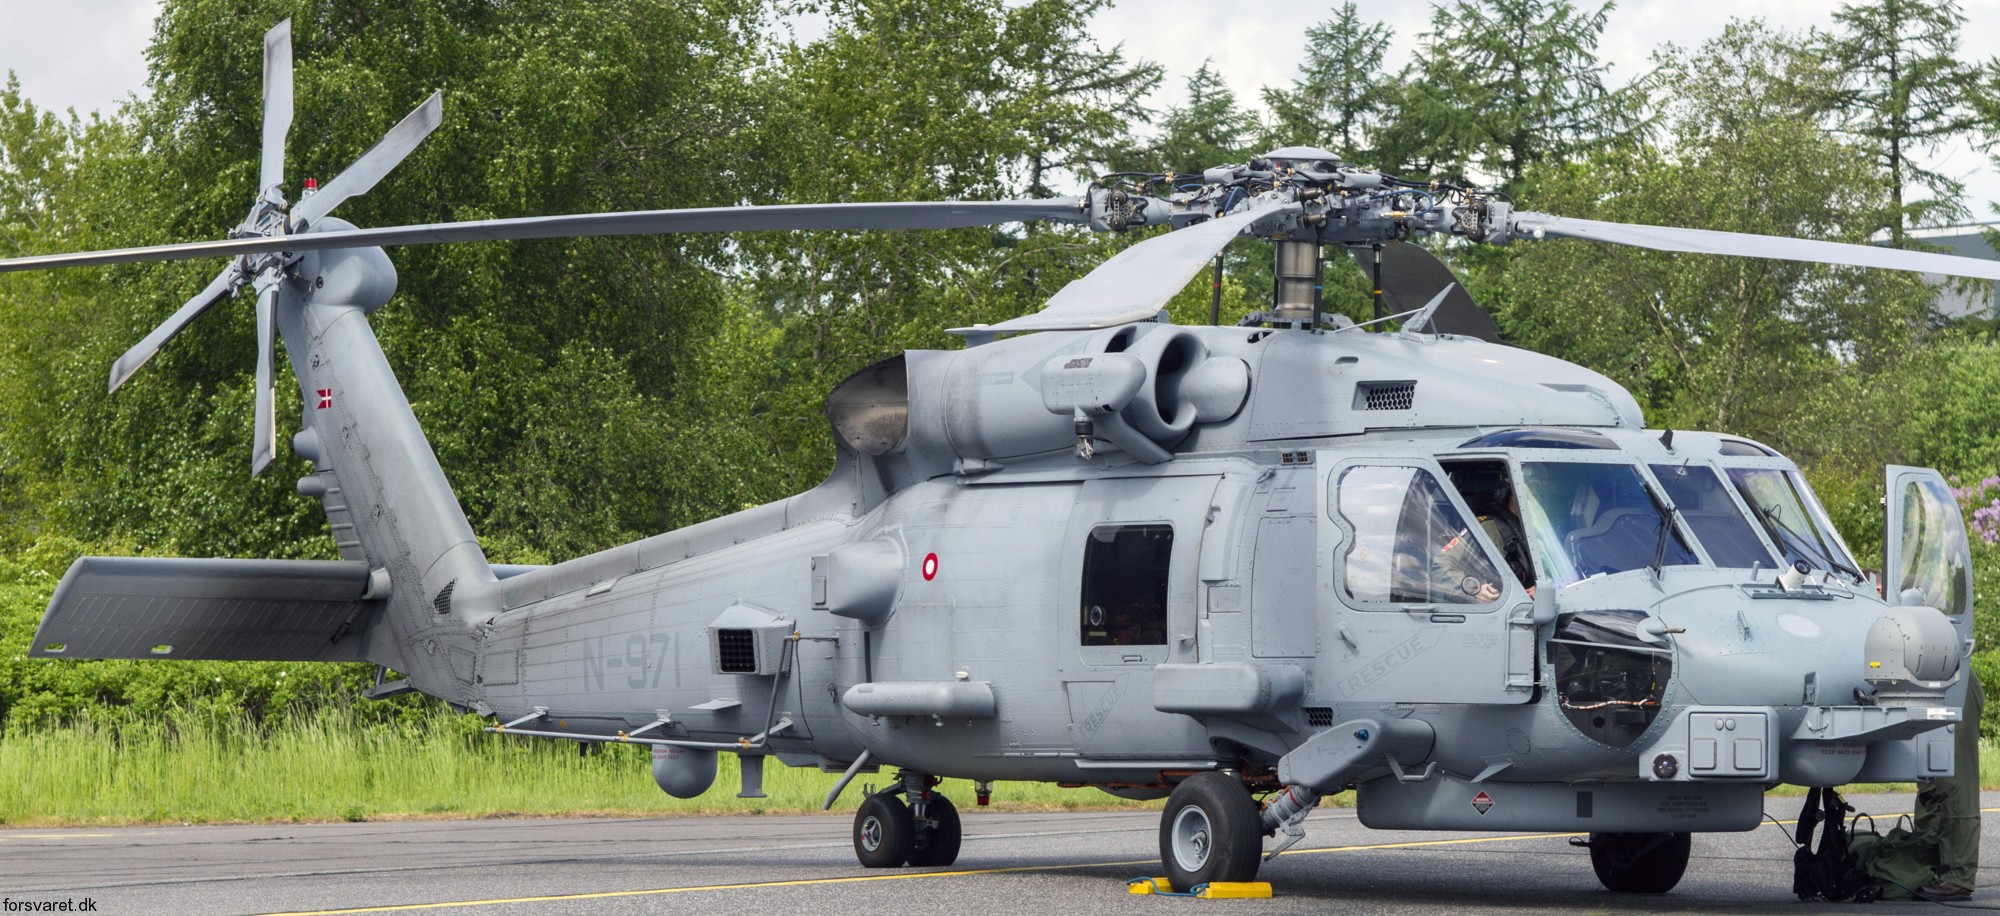 mh-60r seahawk royal danish navy air force flyvevåbnet kongelige danske marine sikorsky helicopter 723 eskadrille squadron karup 33